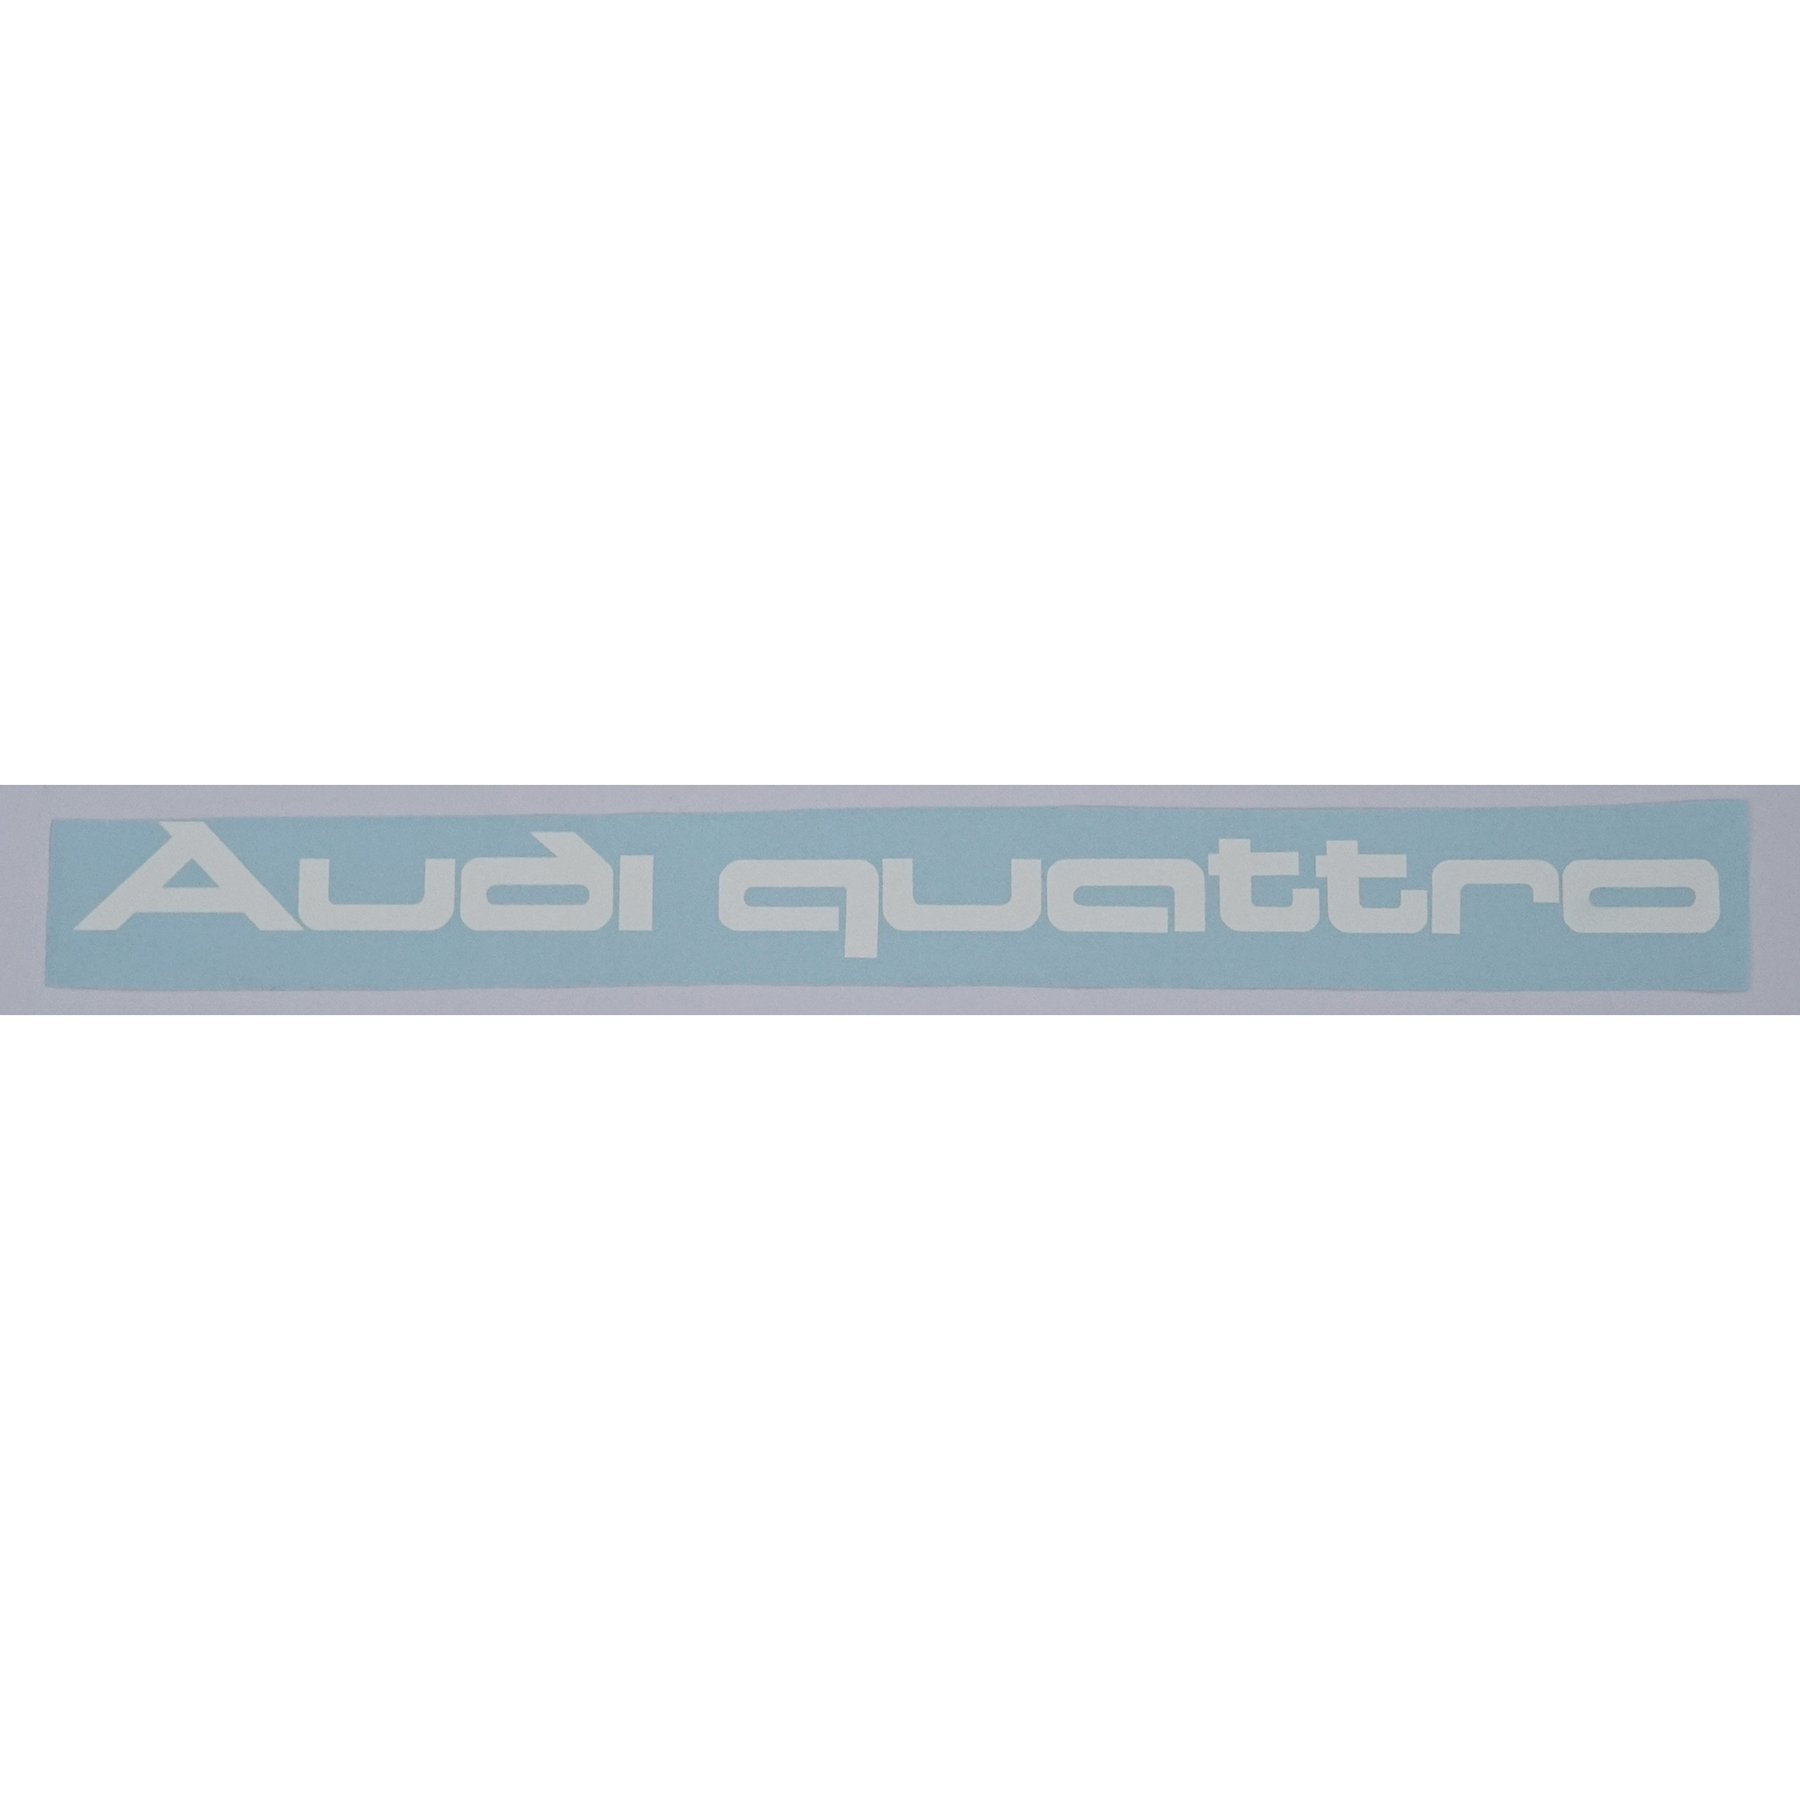 7 Audi Quattro - Aufkleber / Sticker in Niedersachsen